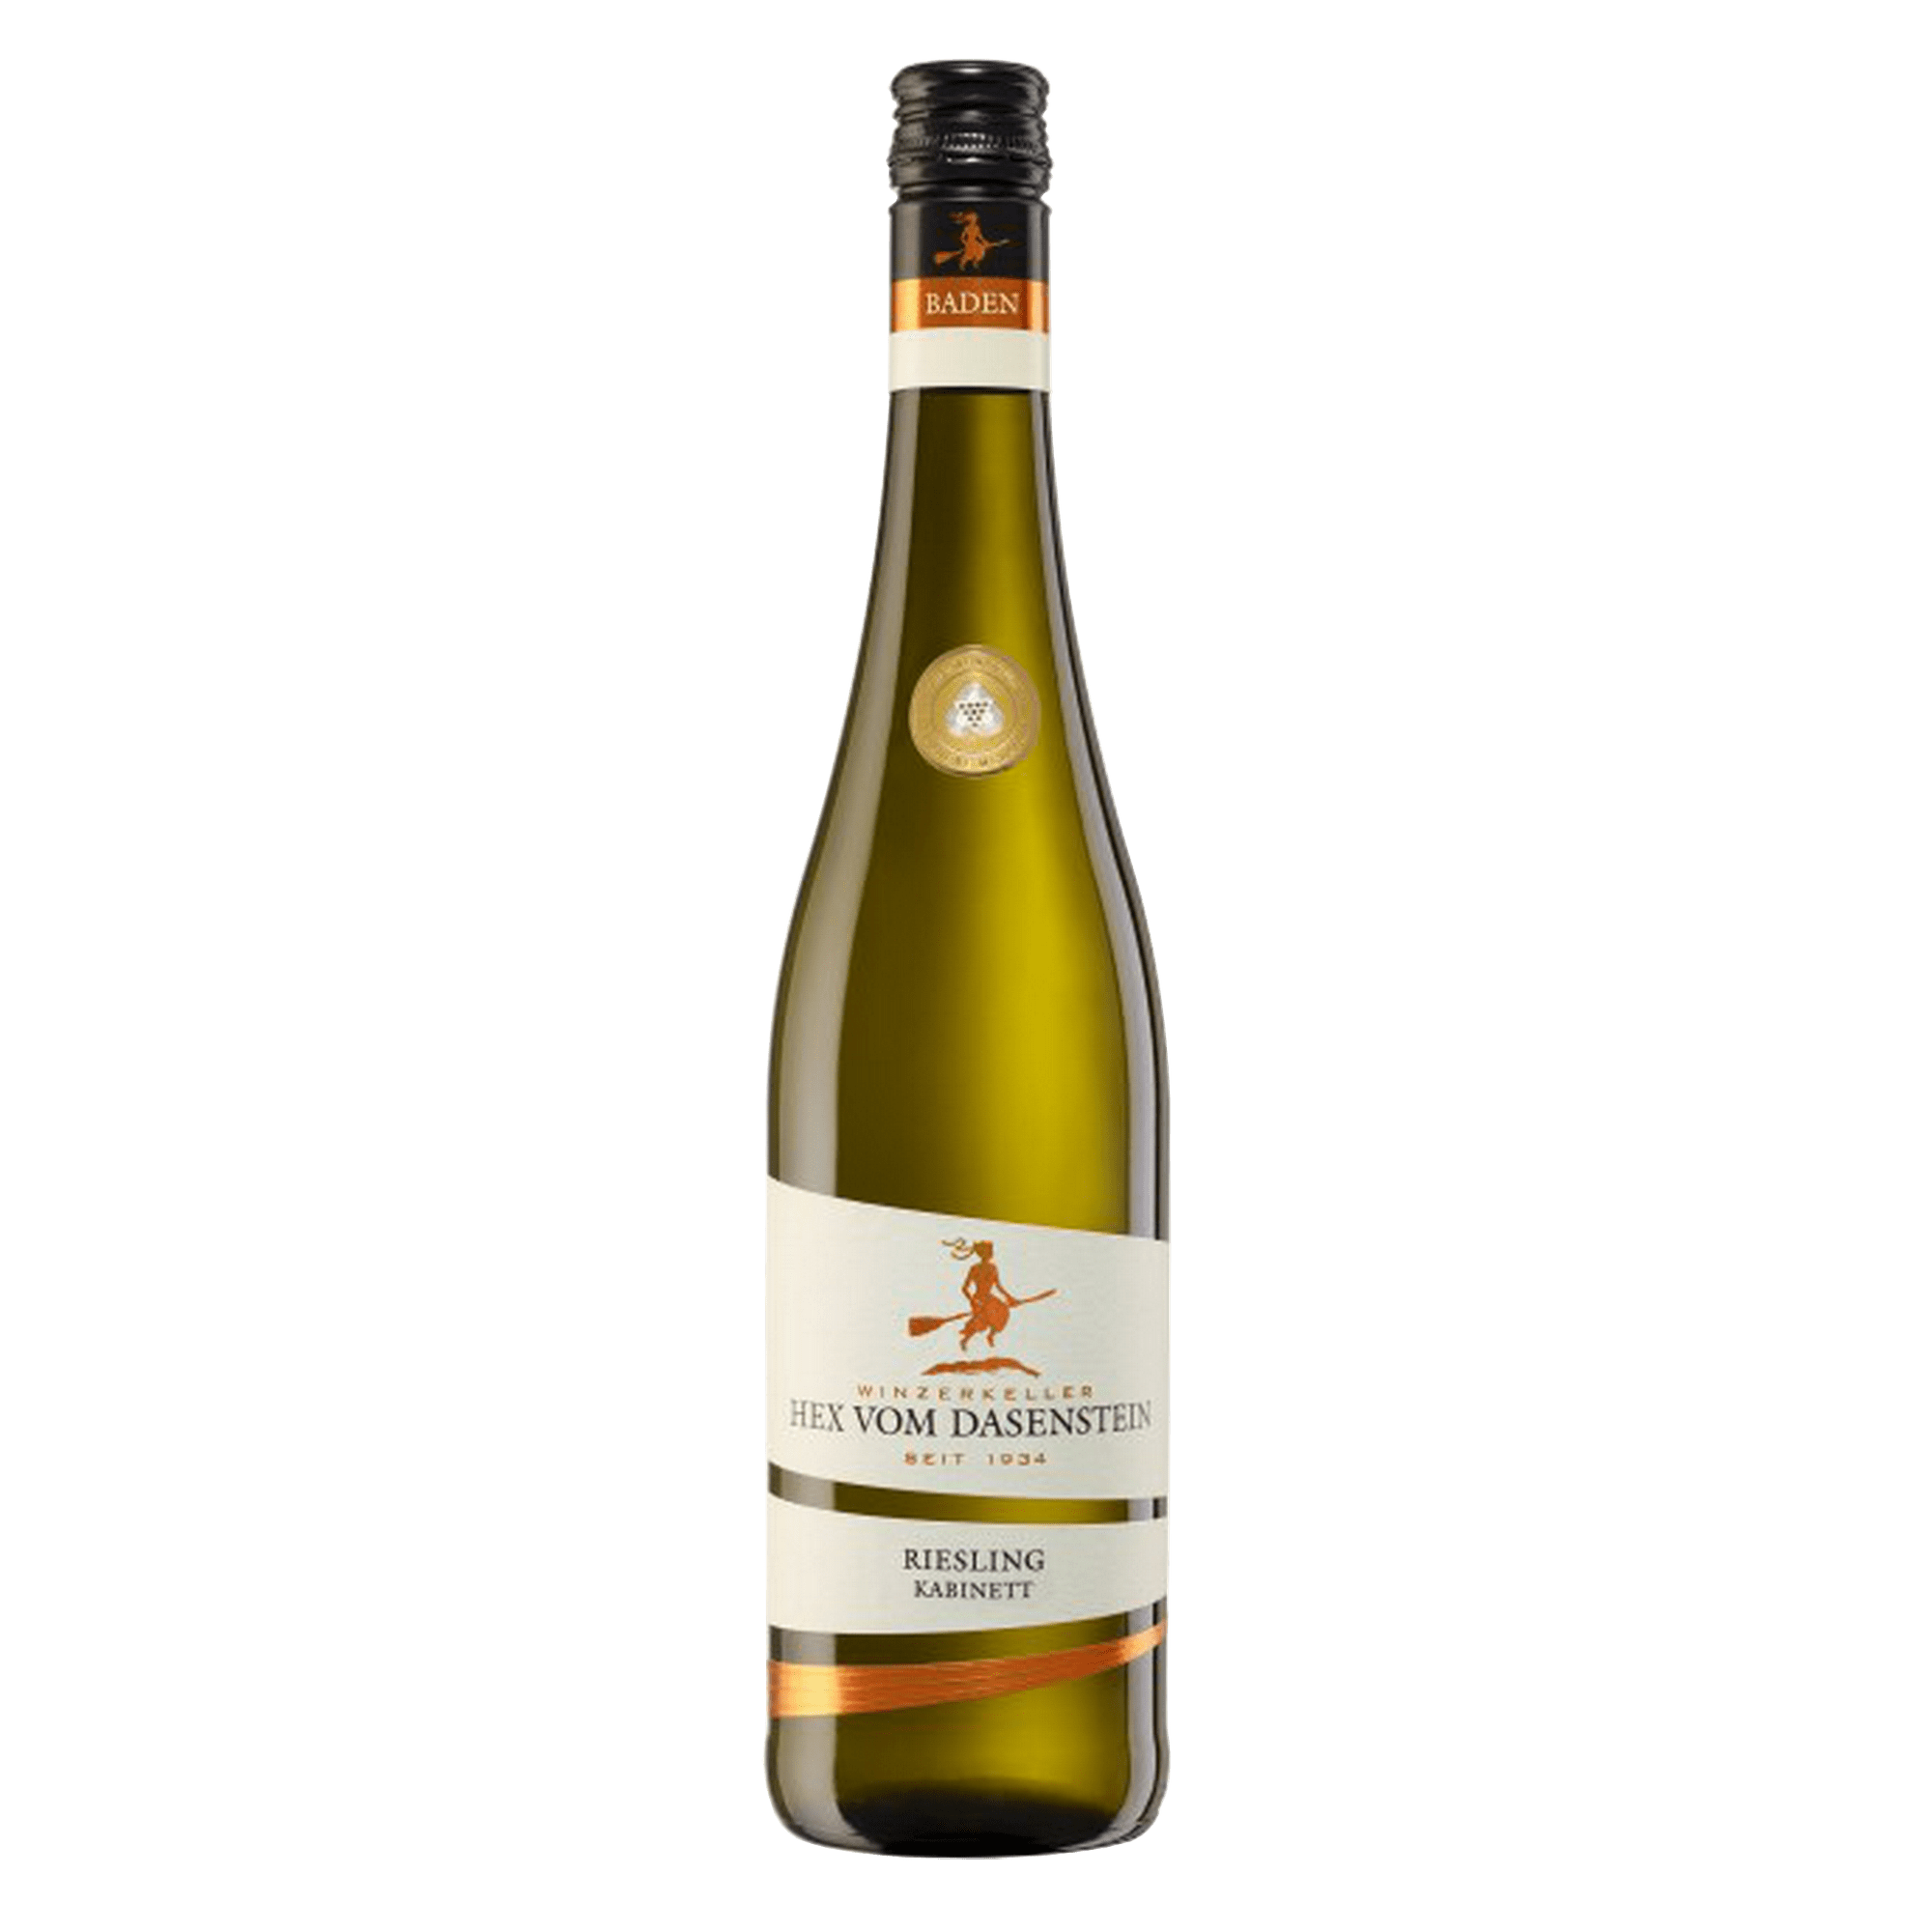 Hex vom Dasenstein Riesling Kabinett 2020 - Kälble Wein